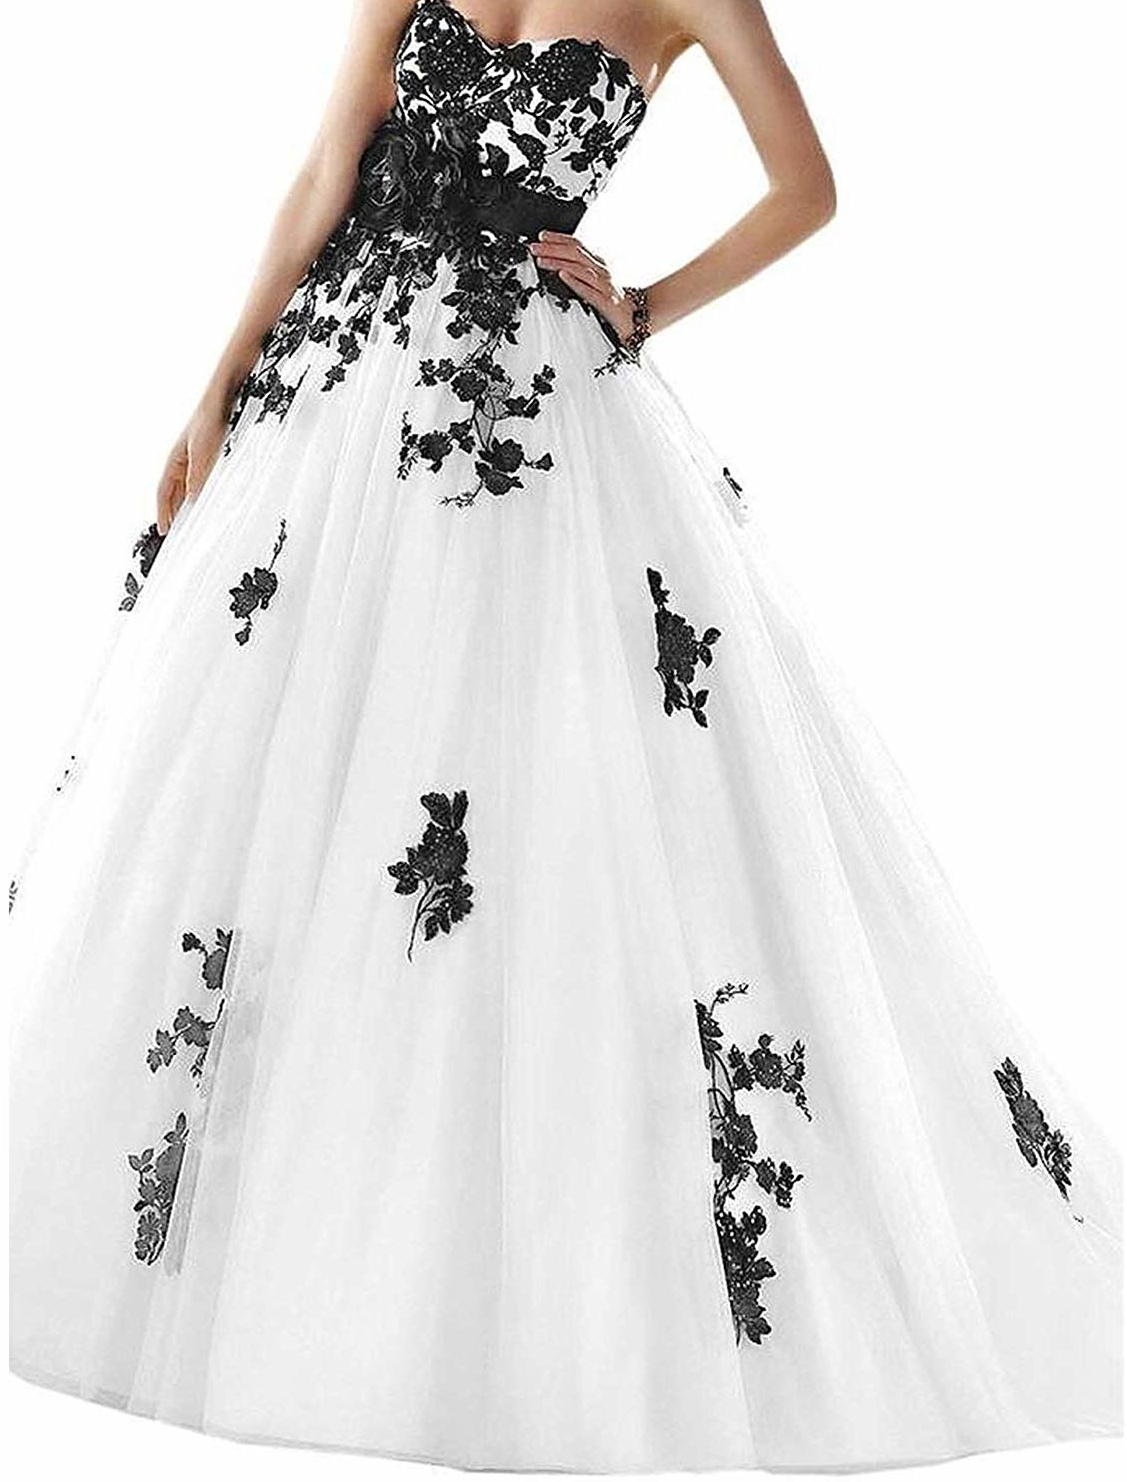 black & white dresses for weddings